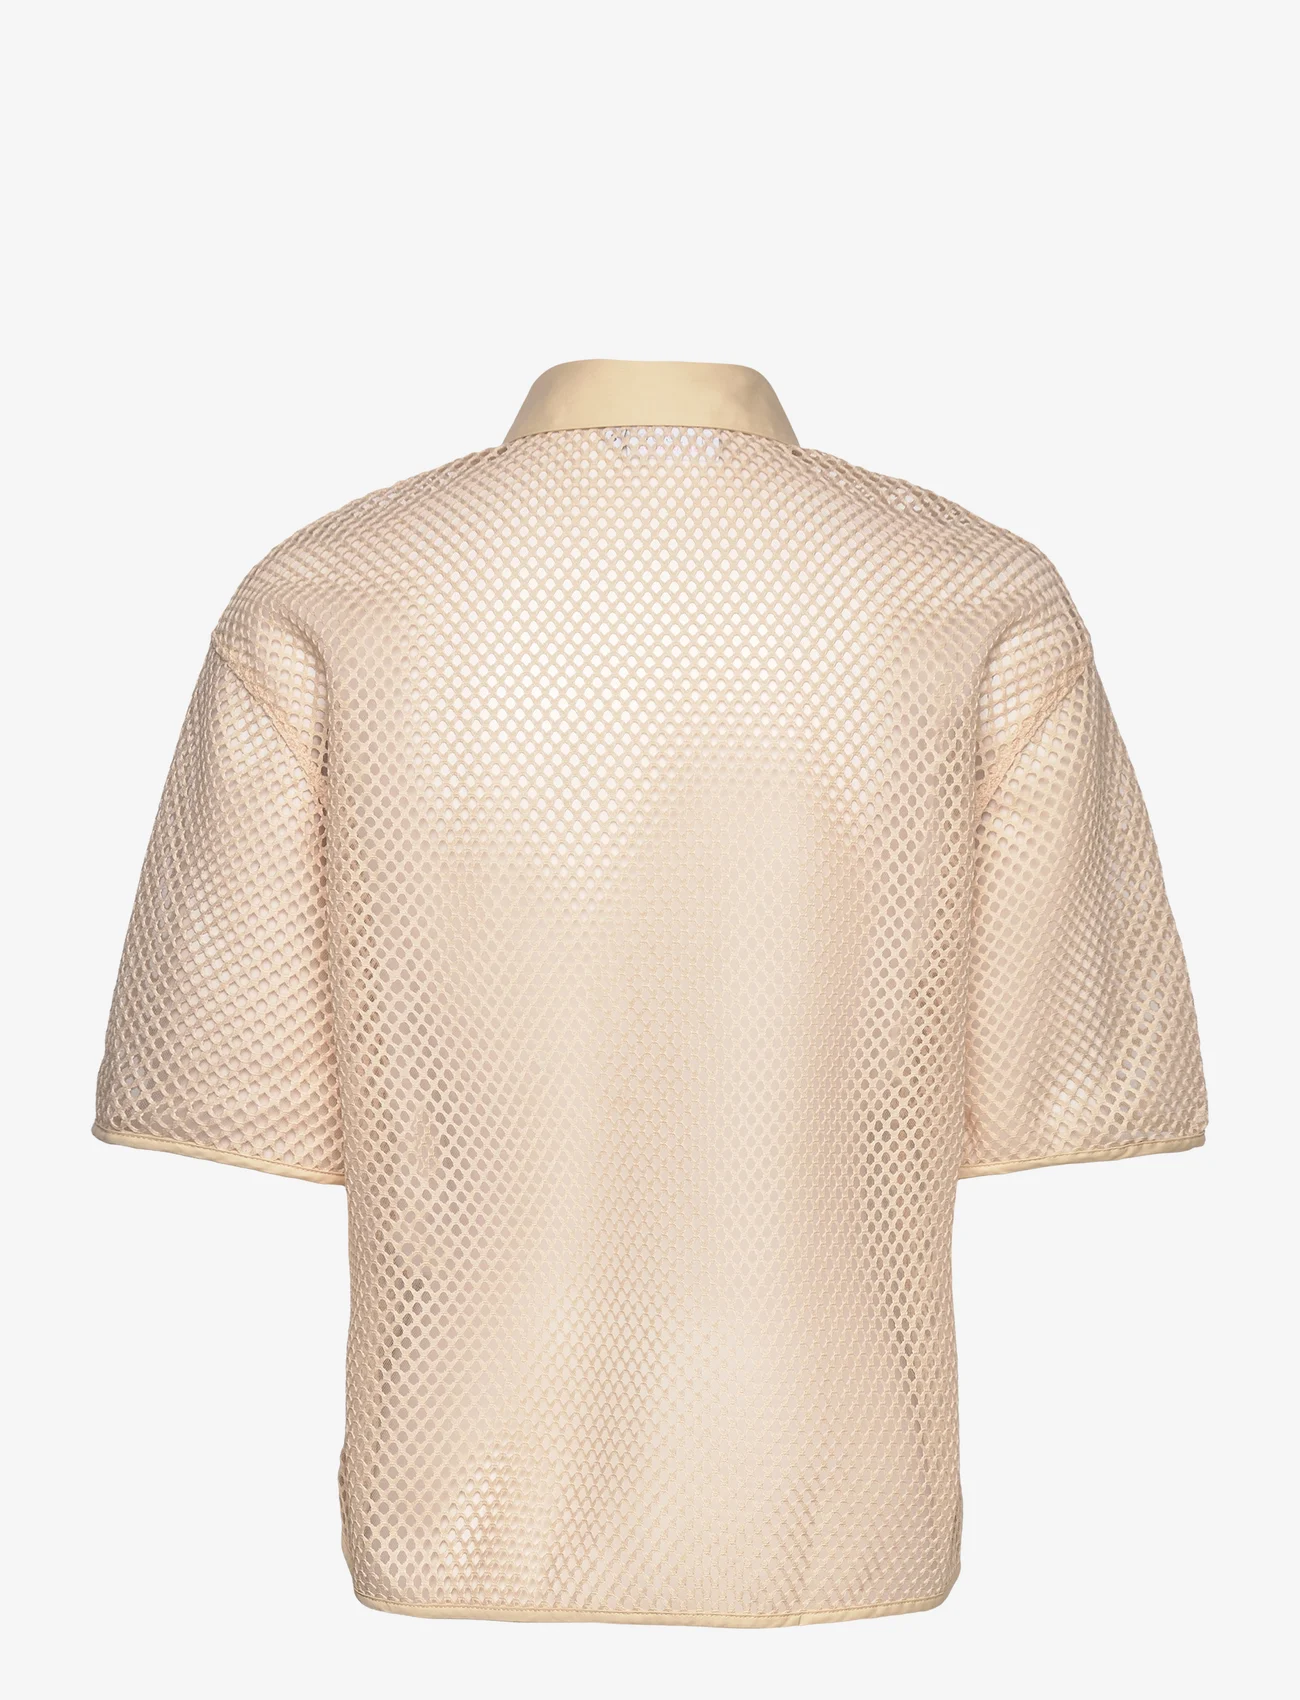 Coster Copenhagen - Mesh shirt - kortärmade skjortor - vanilla - 1